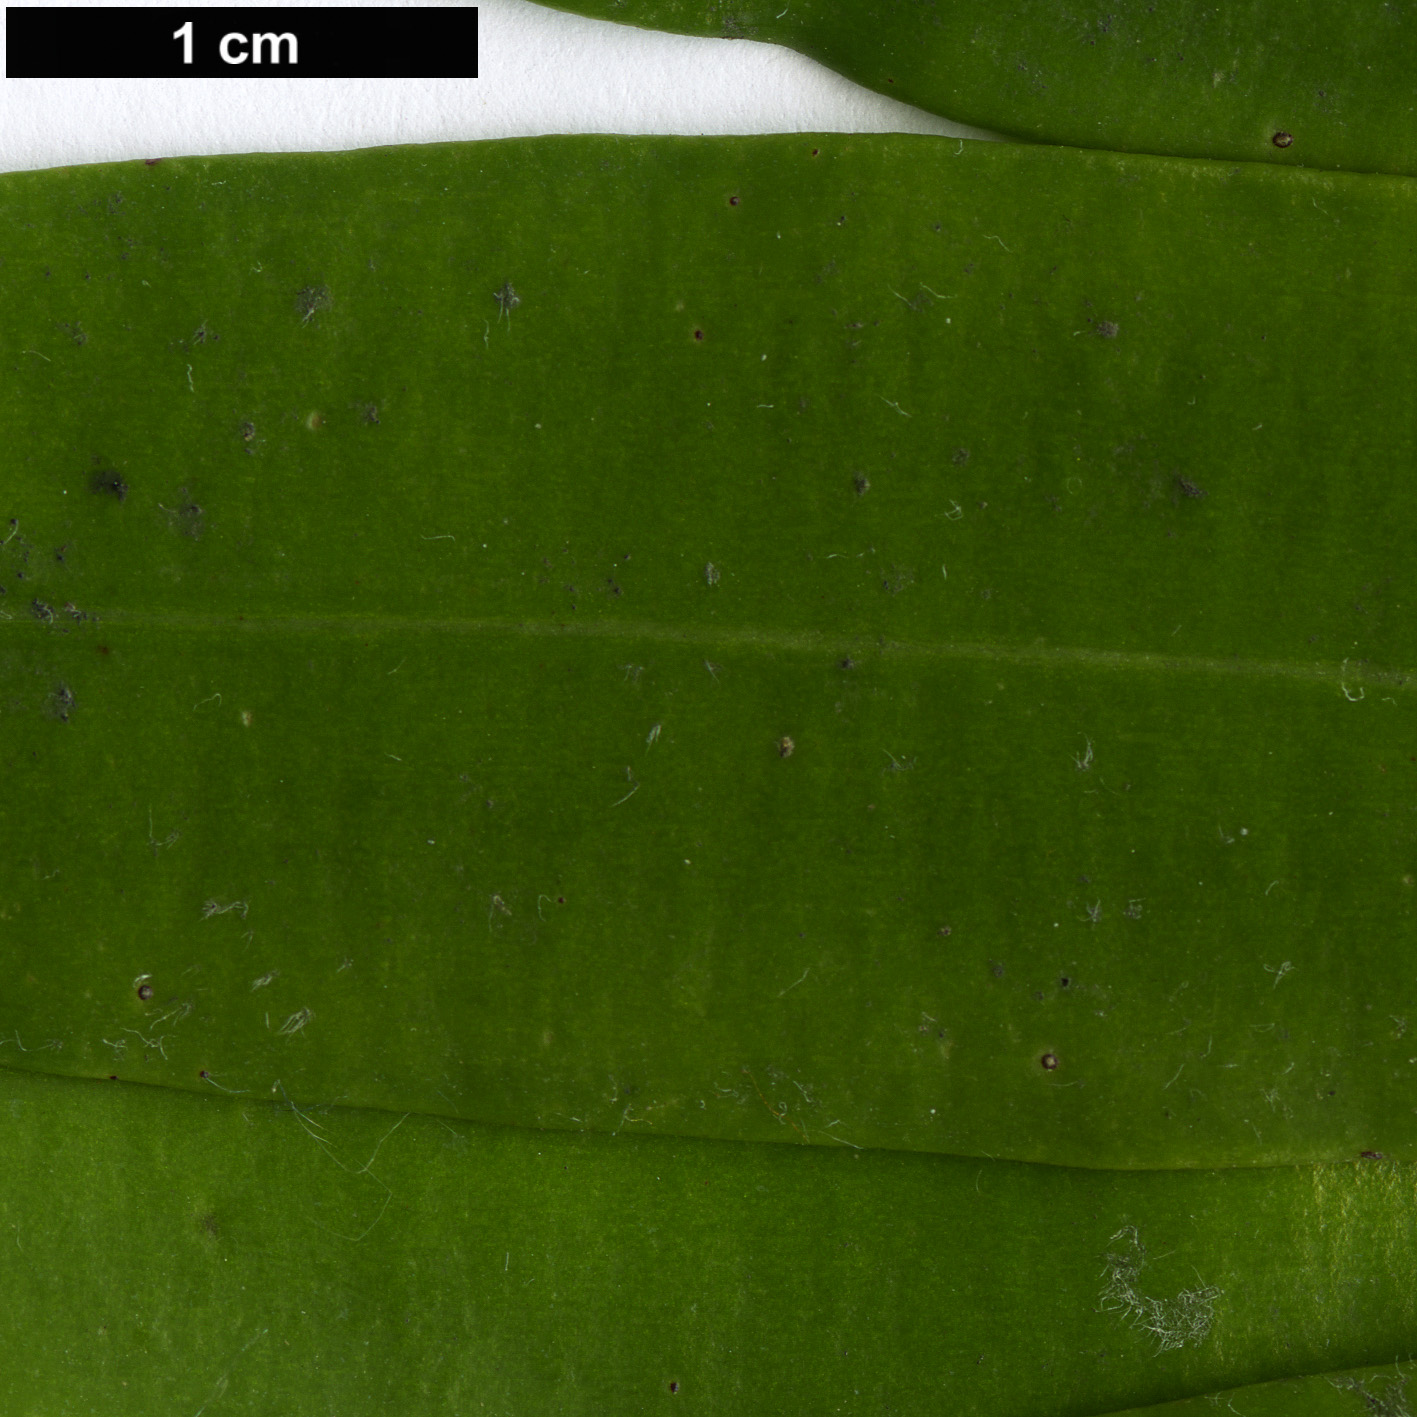 High resolution image: Family: Podocarpaceae - Genus: Sundacarpus - Taxon: amarus